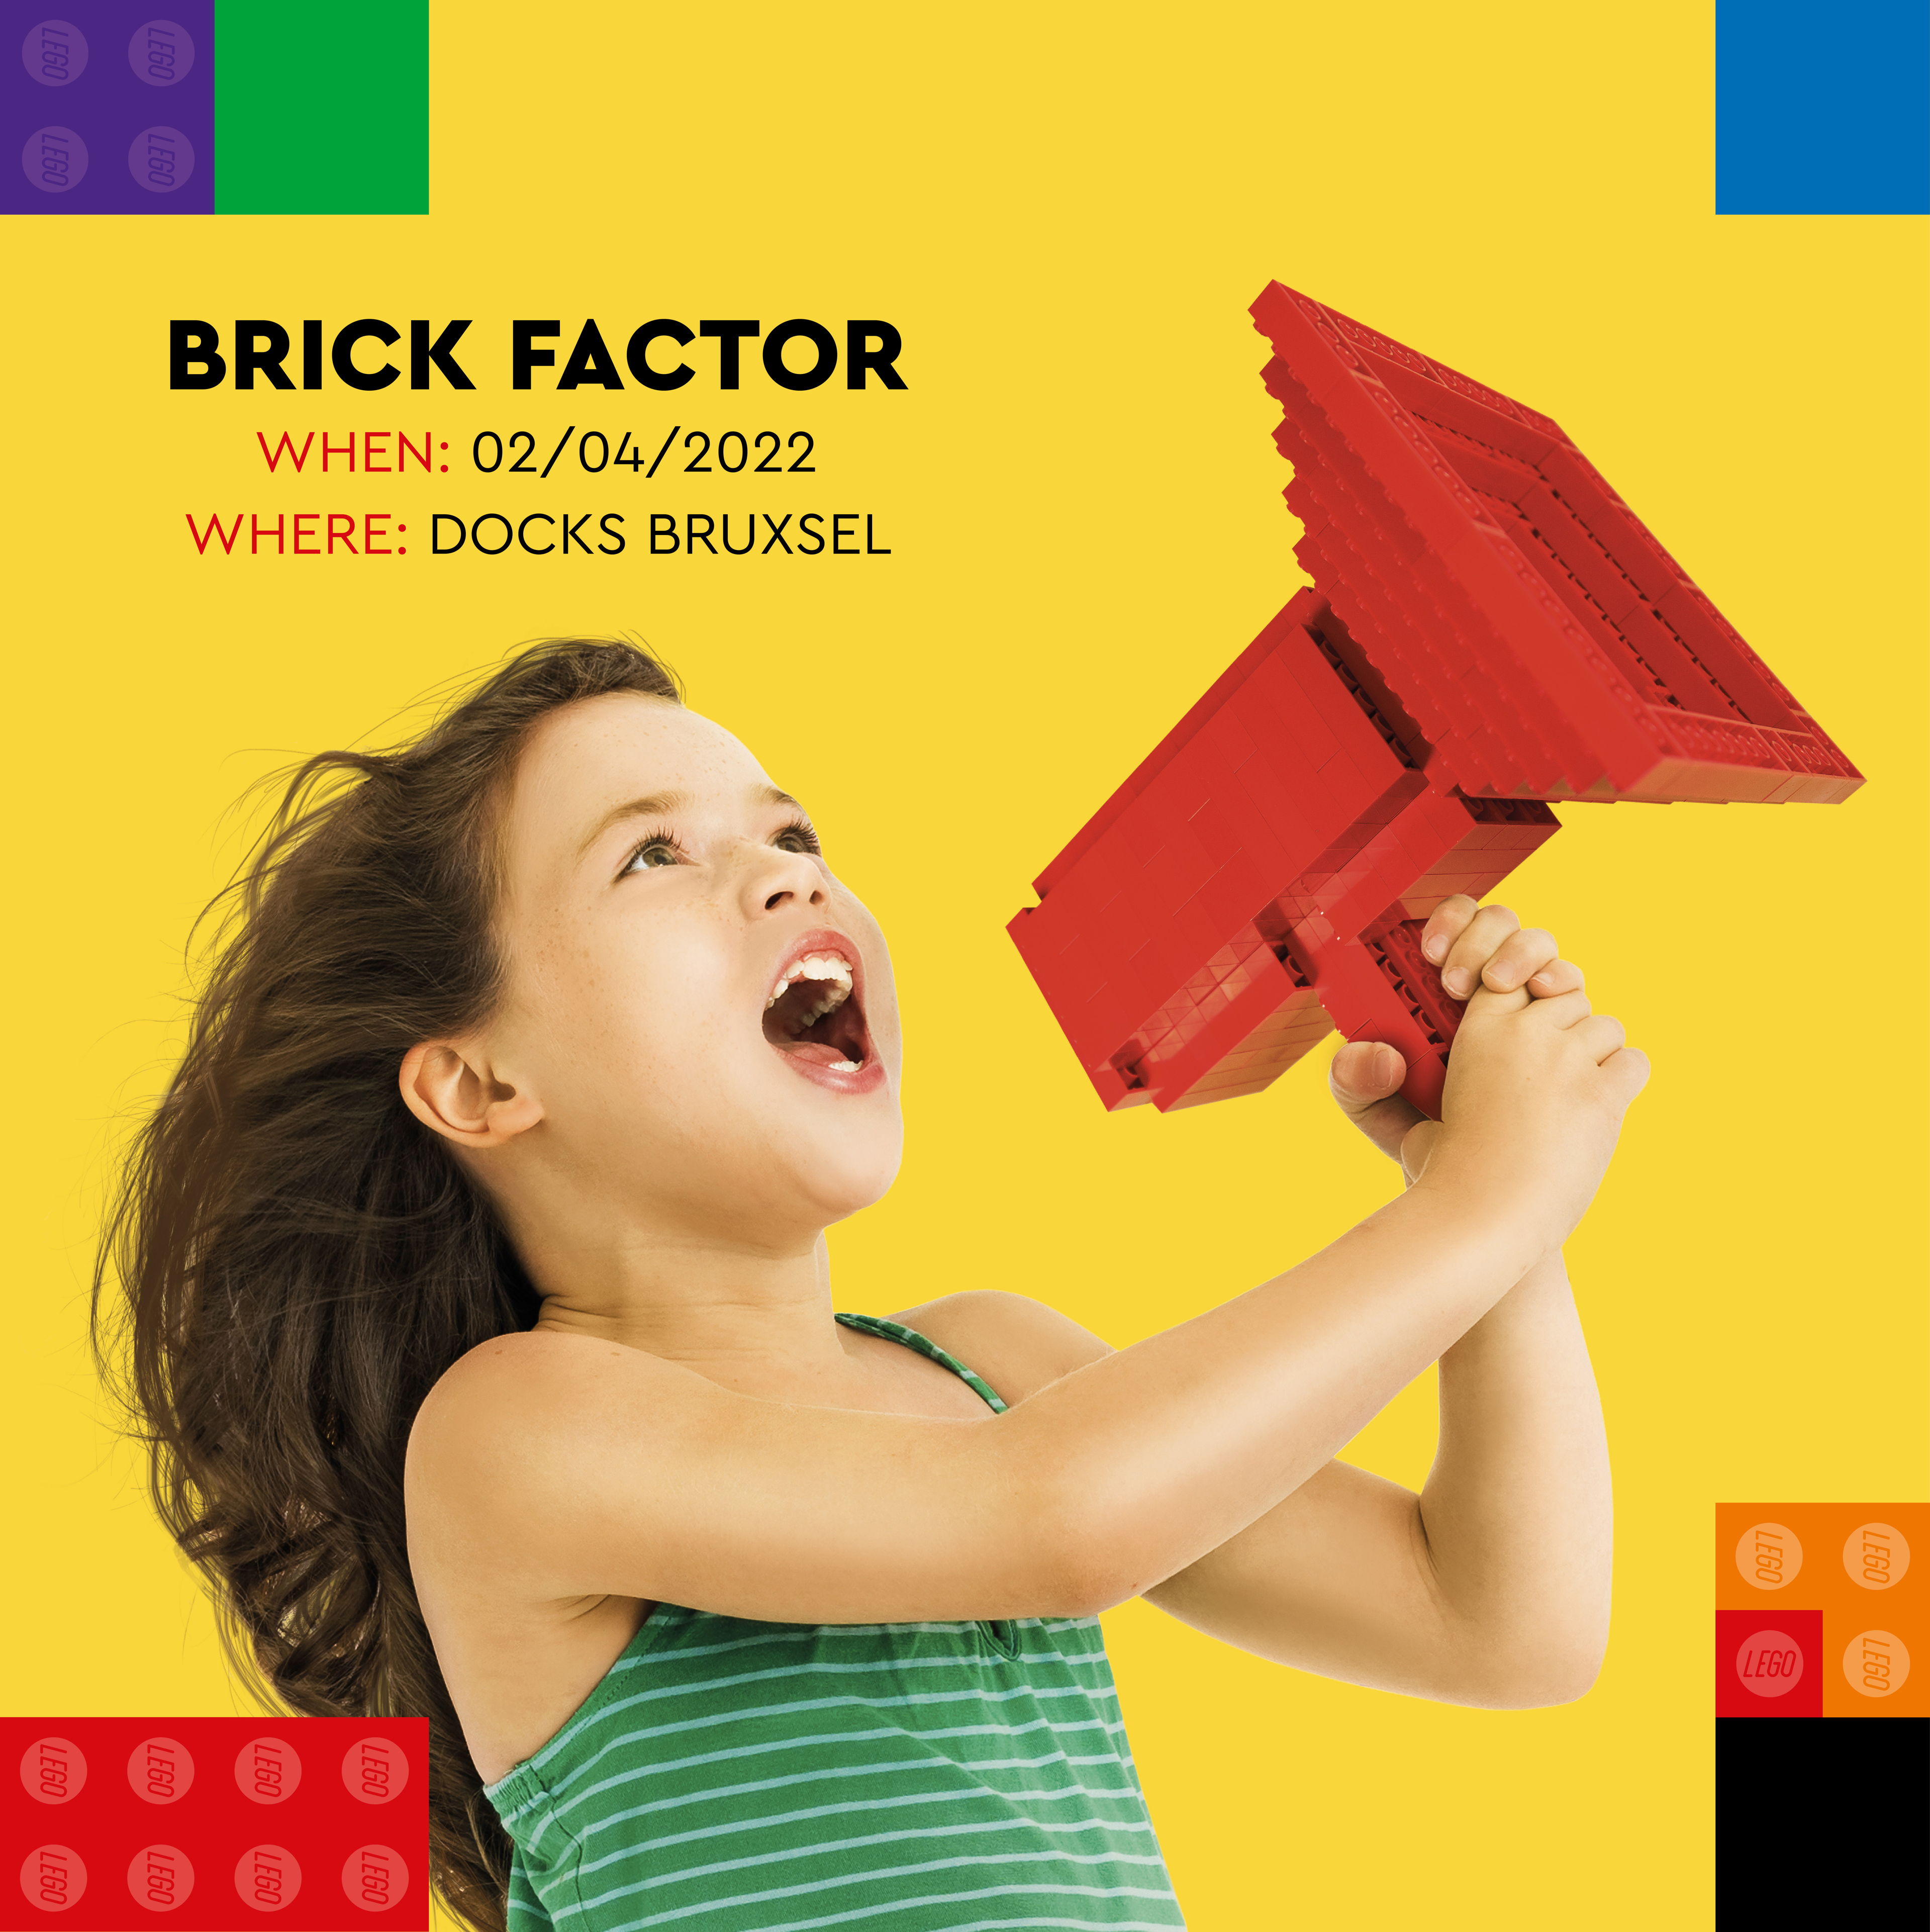 ALERTE MEDIA & INVITATION PRESSE : Dix candidats s’affrontent lors de l’événement Brick Factor pour le poste de rêve de Master Model Builder